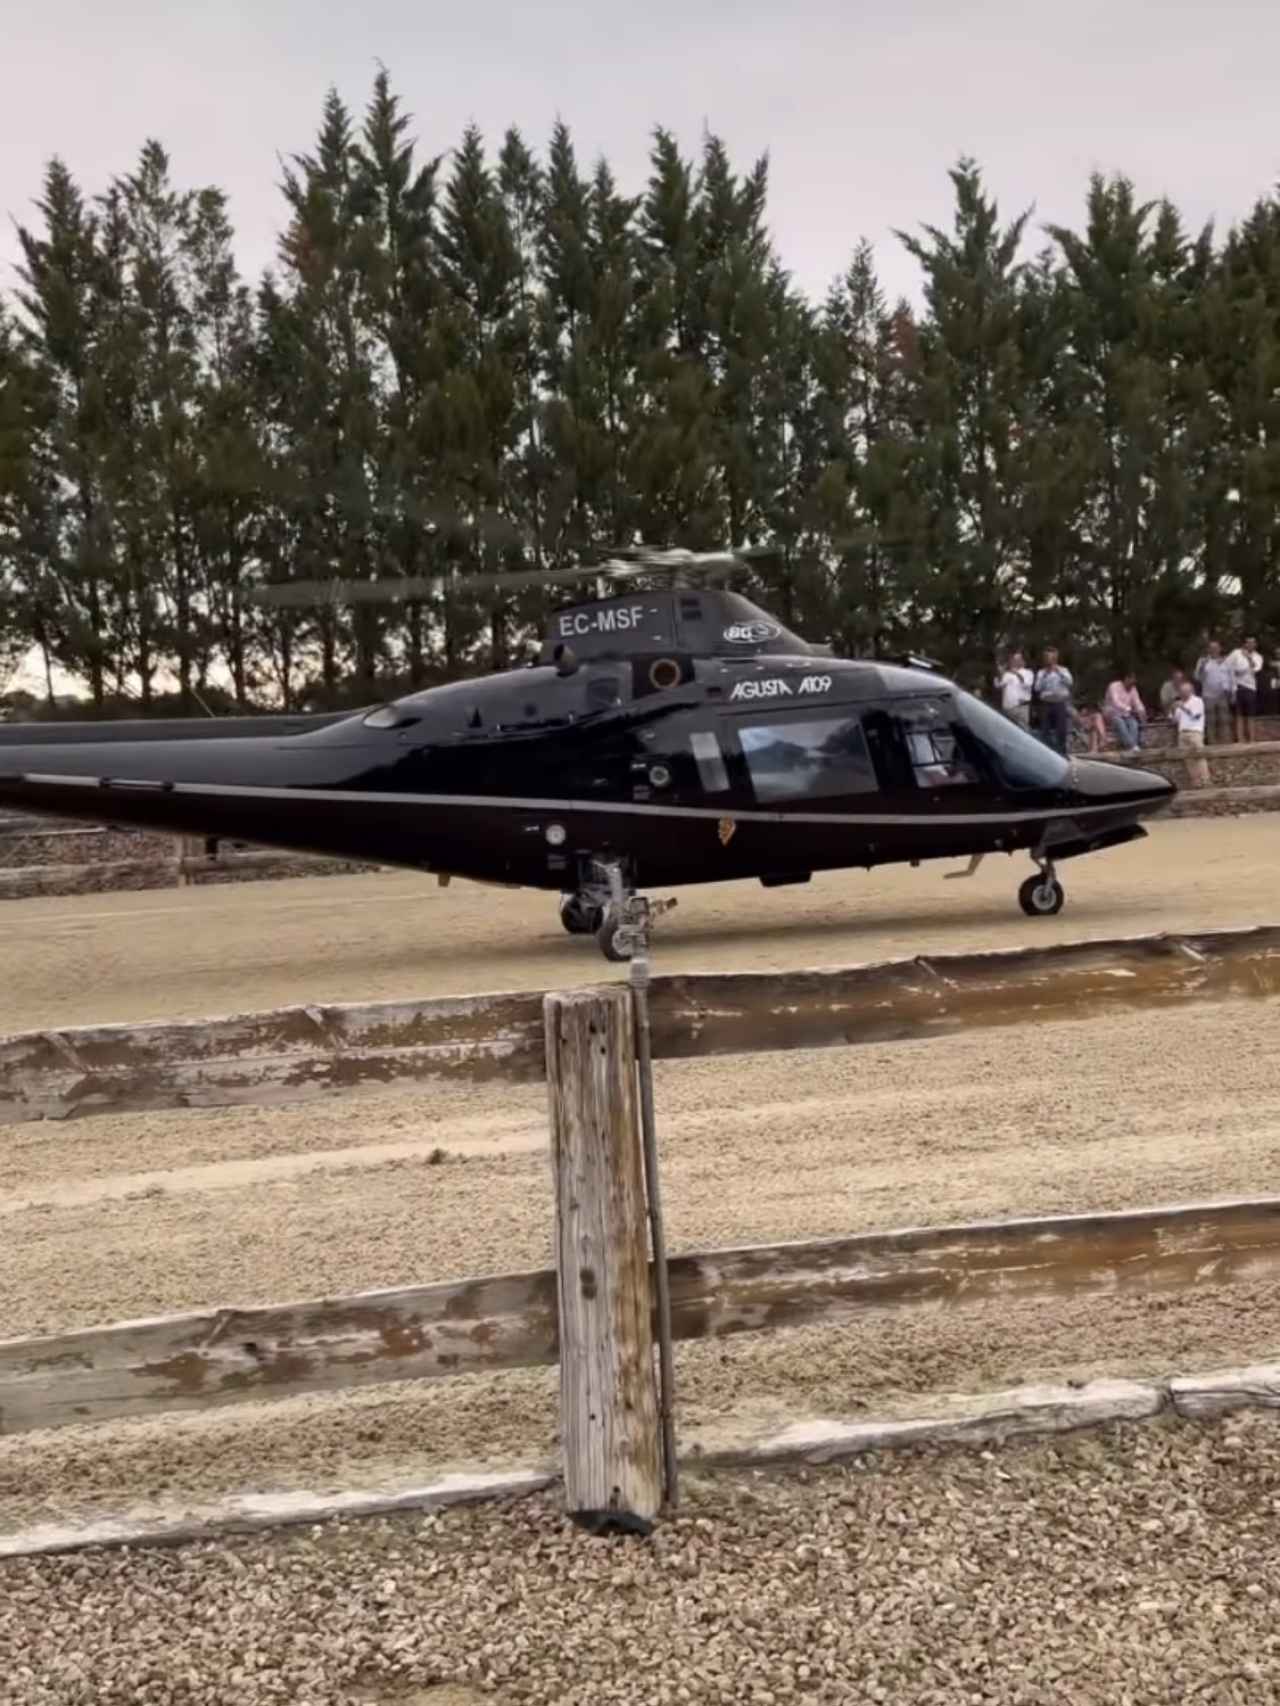 El cumpleañero llegando en helicóptero a su fiesta de cumpleaños.